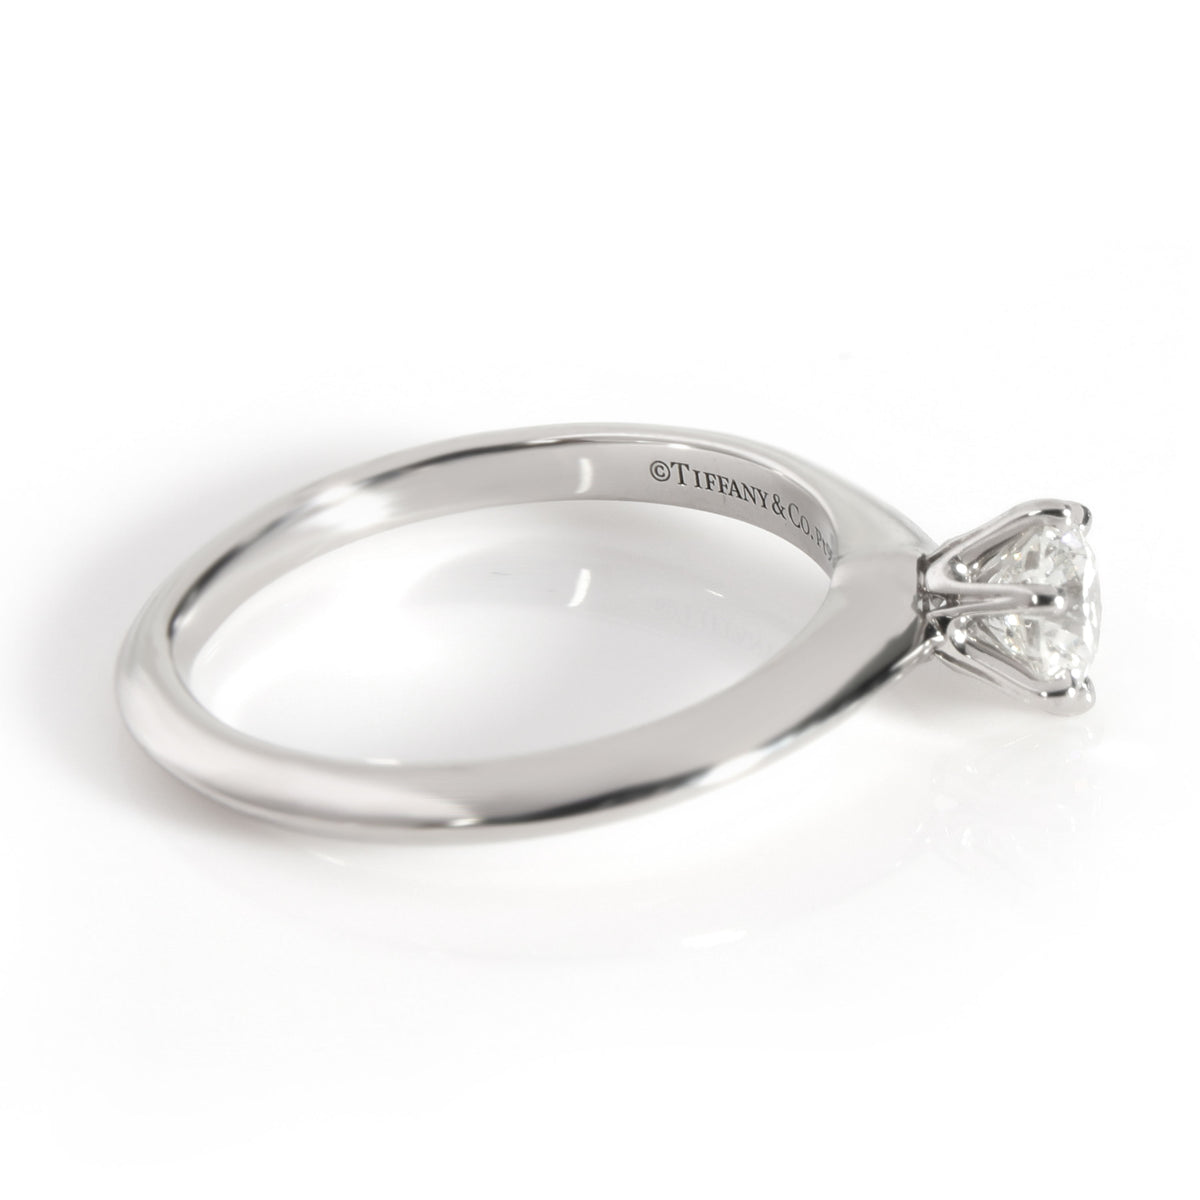 Solitaire Diamond Engagement Ring in Platinum H SI1 0.44 CTW